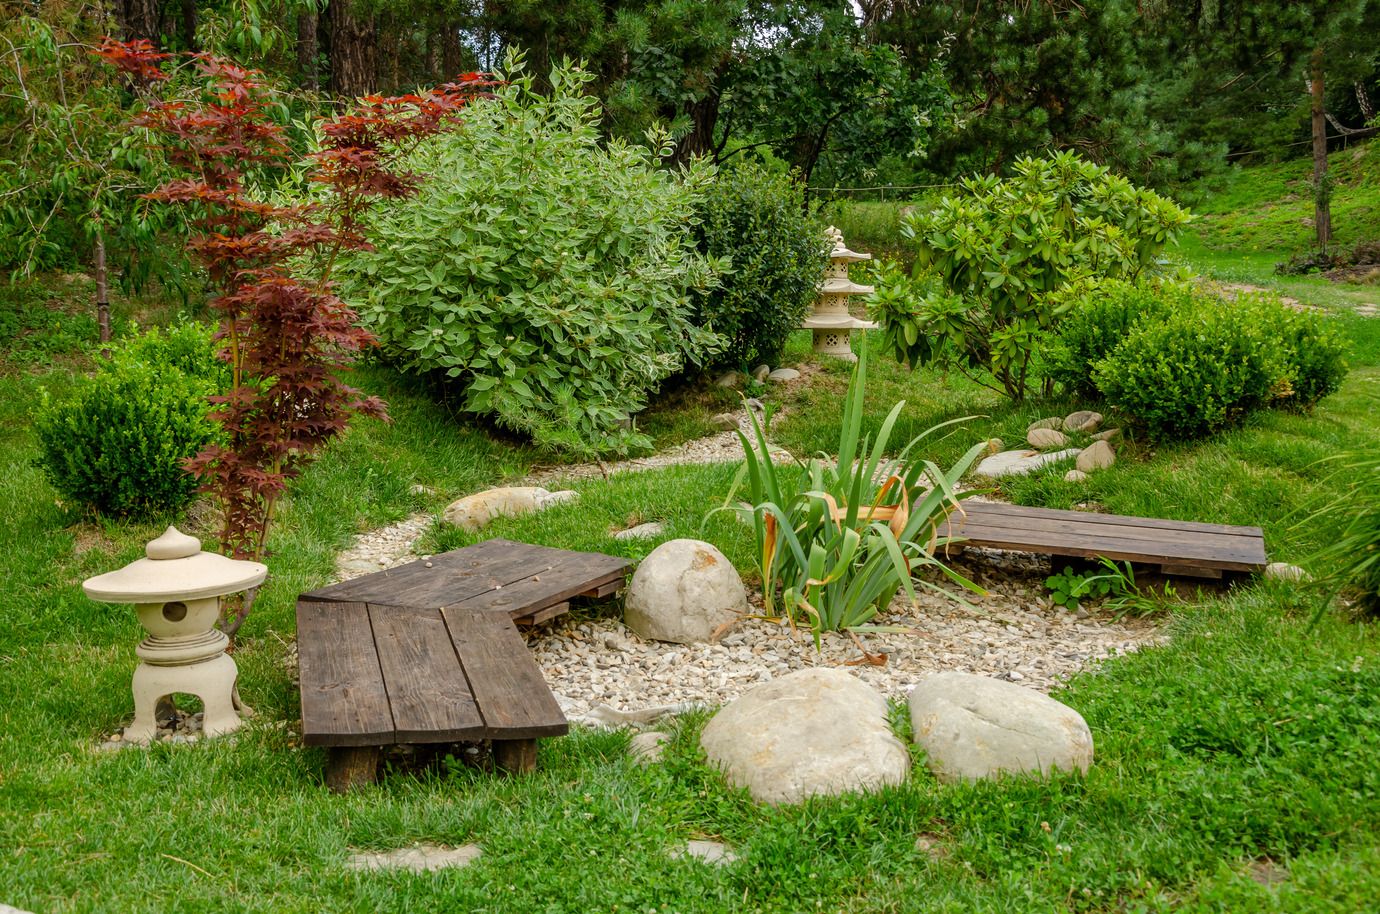 Aménager un jardin Zen japonais chez soi - Cetelem